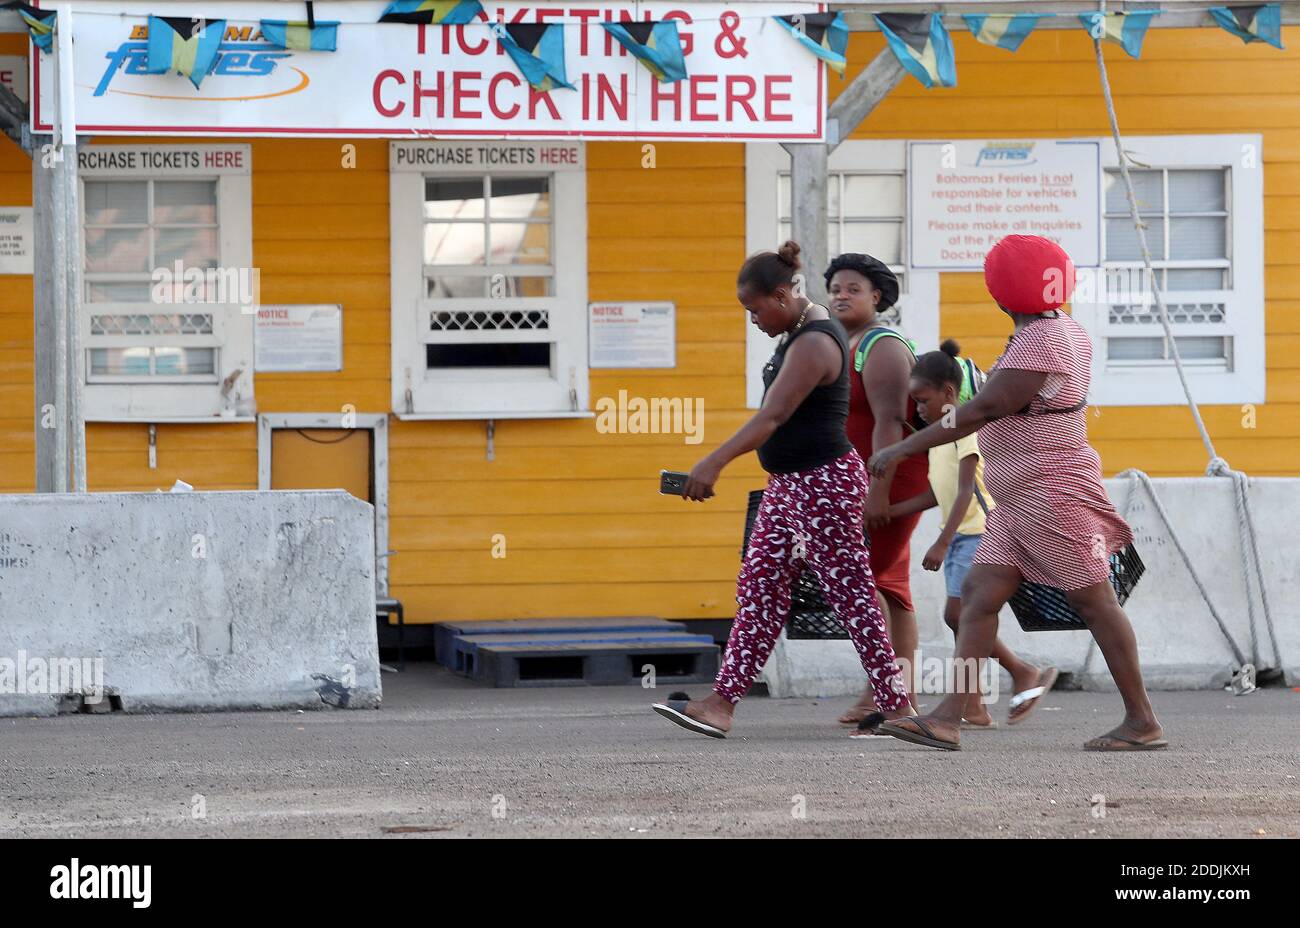 KEIN FILM, KEIN VIDEO, KEIN Fernsehen, KEIN DOKUMENTARFILM - haitianische Frauen und Kinder verlassen das Dock in Nassau, nachdem sie eine Fähre von Abaco genommen haben, um den Schäden nach dem Hurrikan Dorian zu entkommen. Nassau, Bahamas, 8. September 2019. Foto von Mike Stocker/South Florida Sun Sentinel/TNS/ABACAPRESS.COM Stockfoto